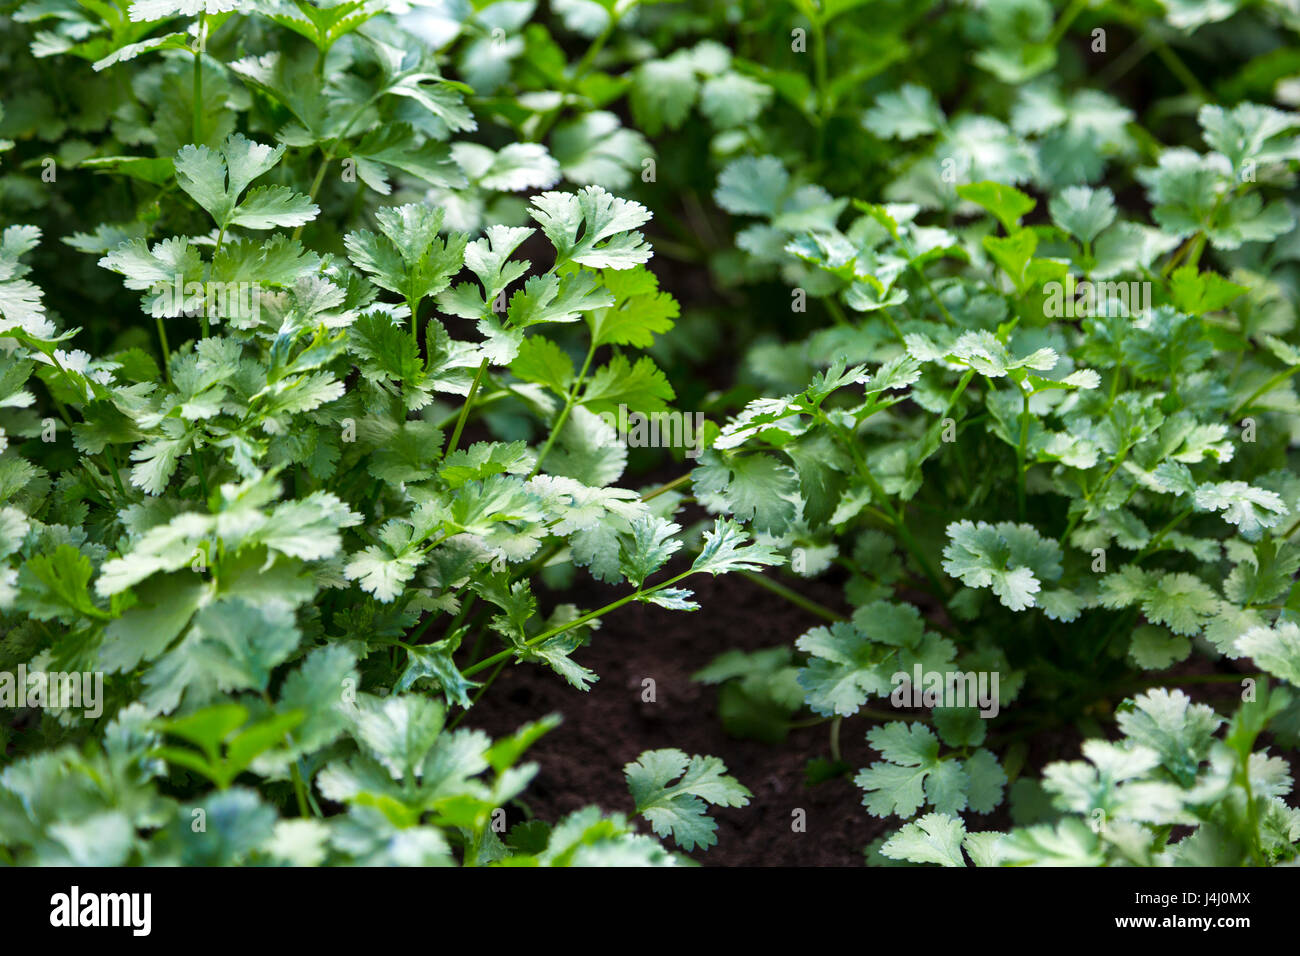 Frischer Koriander (Coriandrum Sativum) Pflanzen wachsen in einem Garten Stockfoto